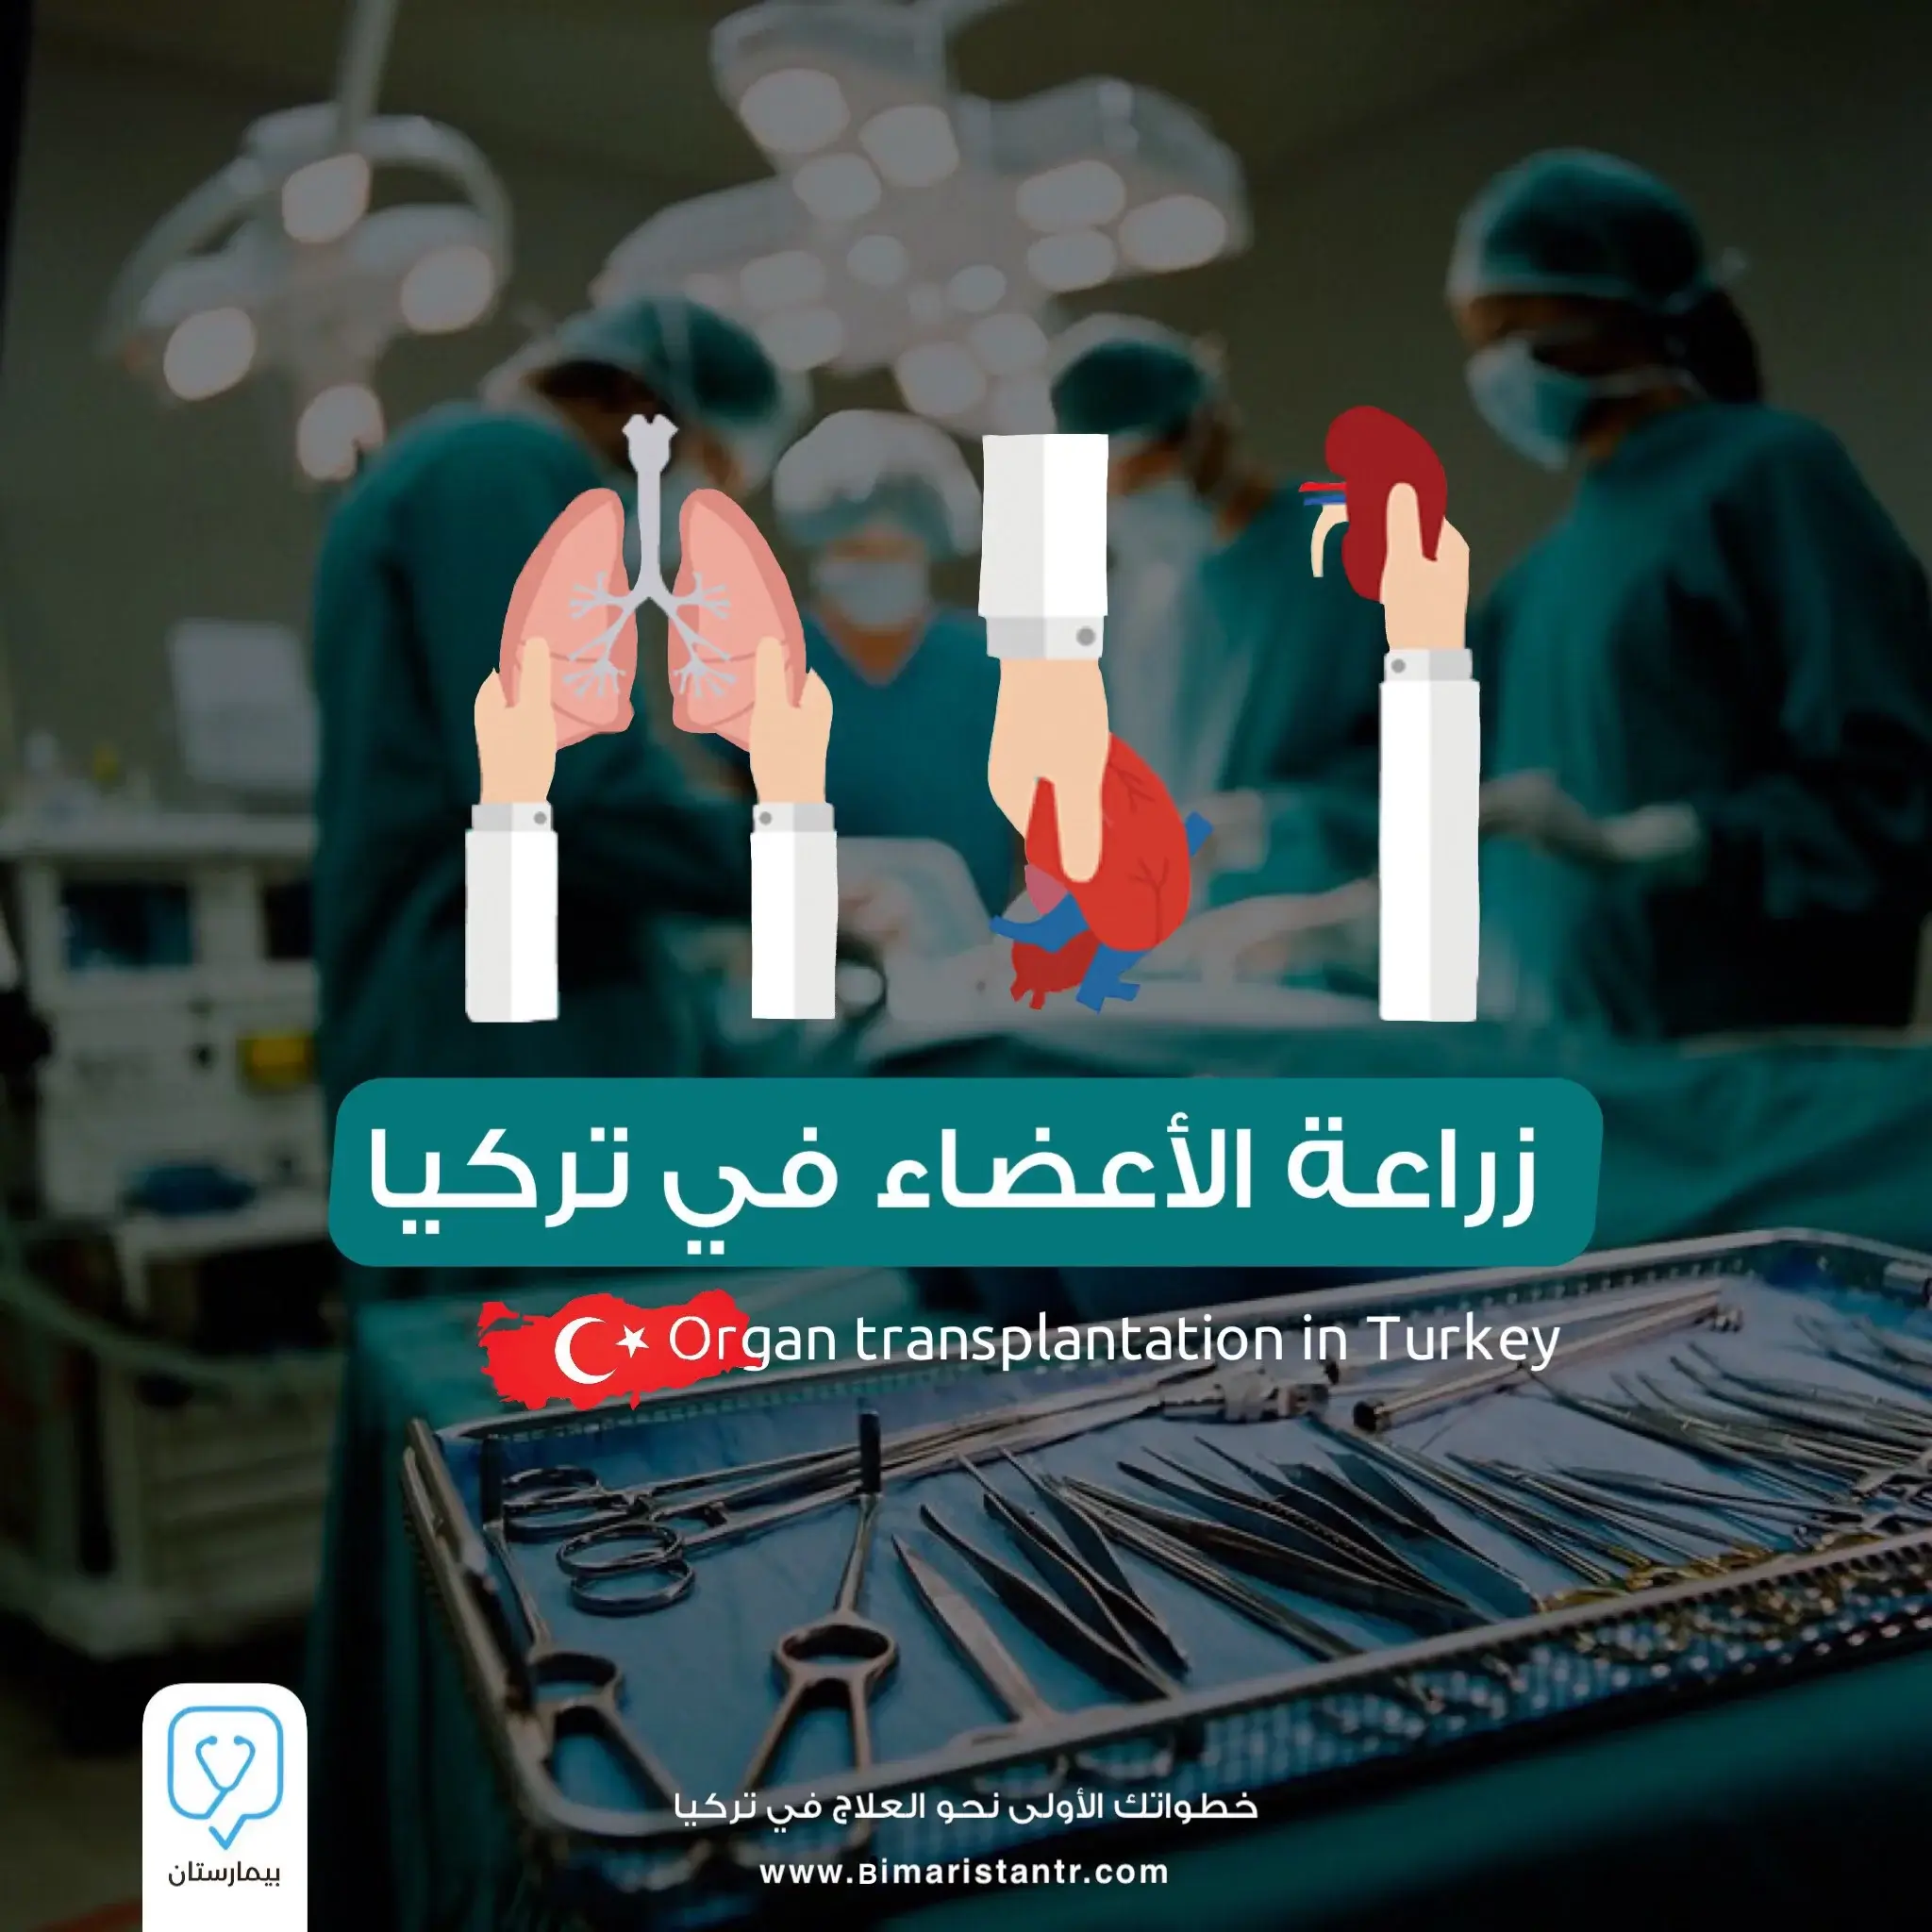 Organ transplantation in Turkey